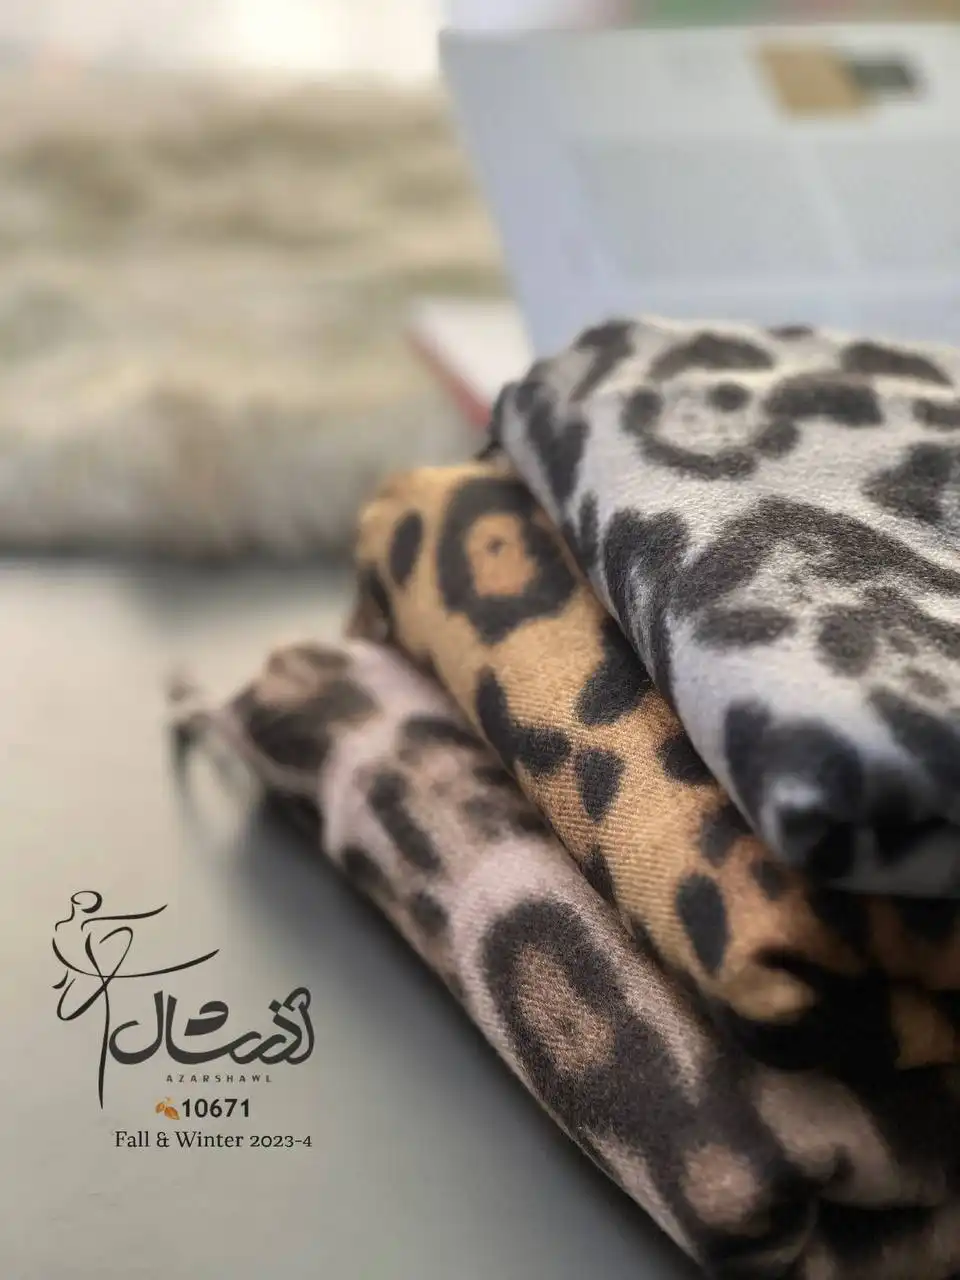 شال موهر پشمی پلنگی ریشه دار - خرید و قیمت آذرشال azarshawl